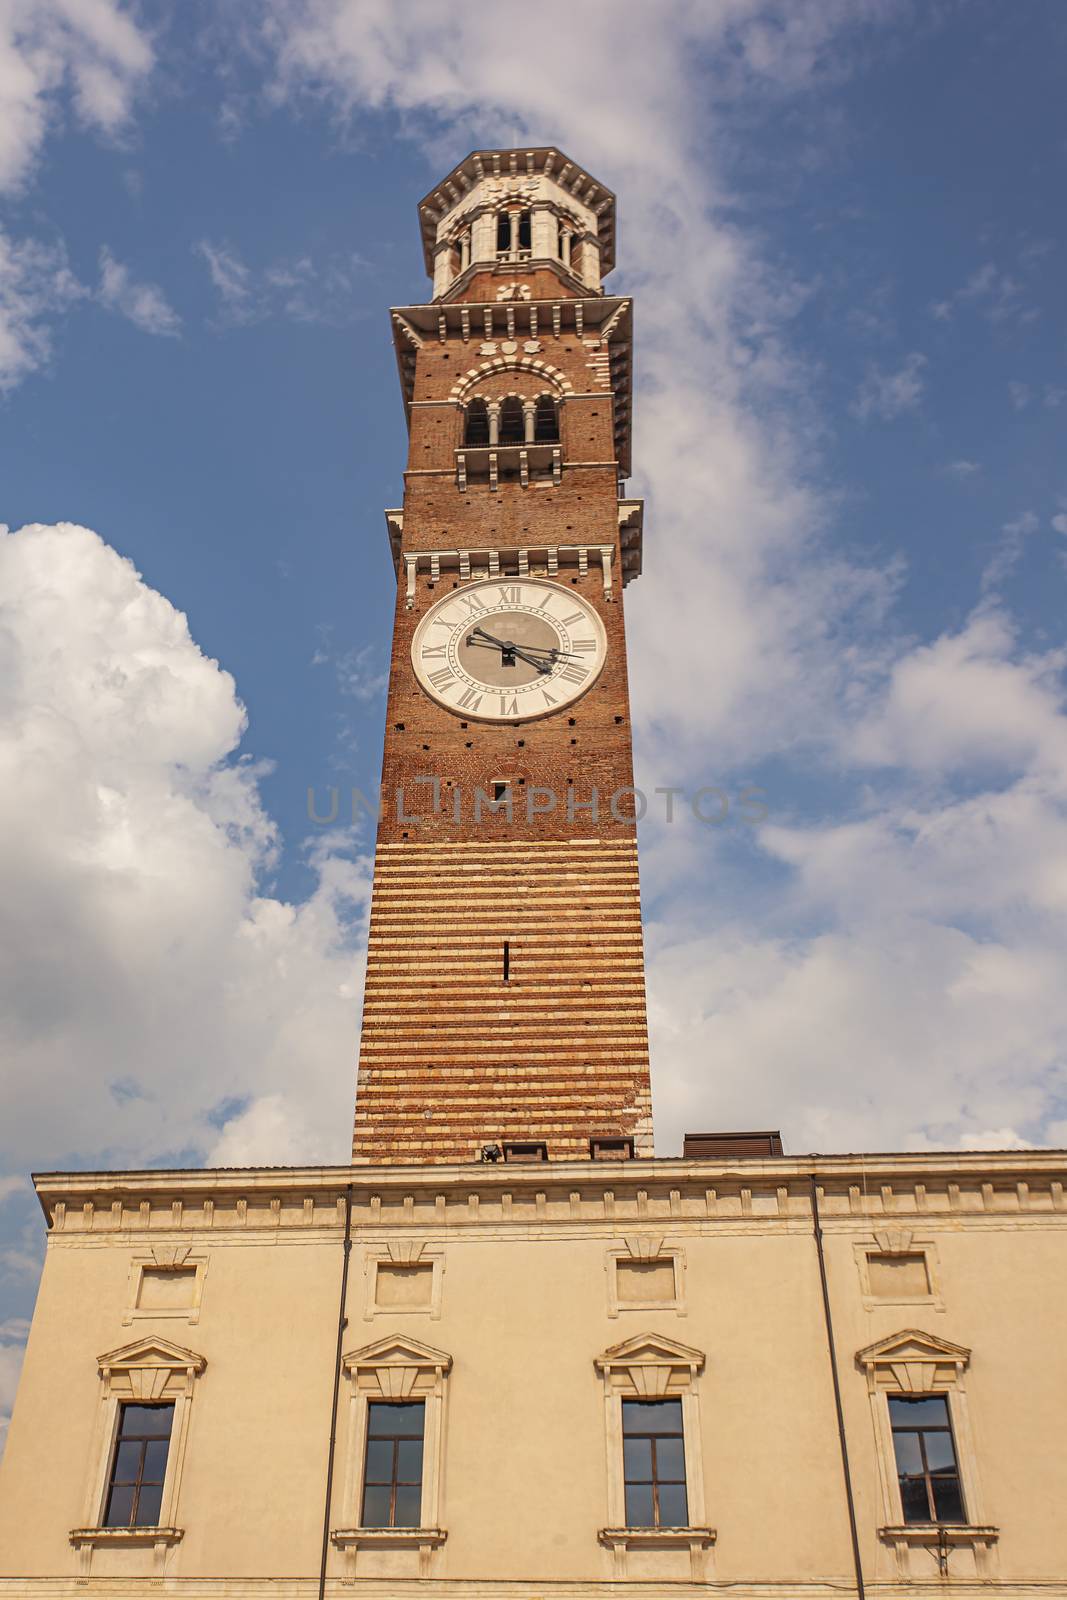 Lamberti tower in verona by pippocarlot